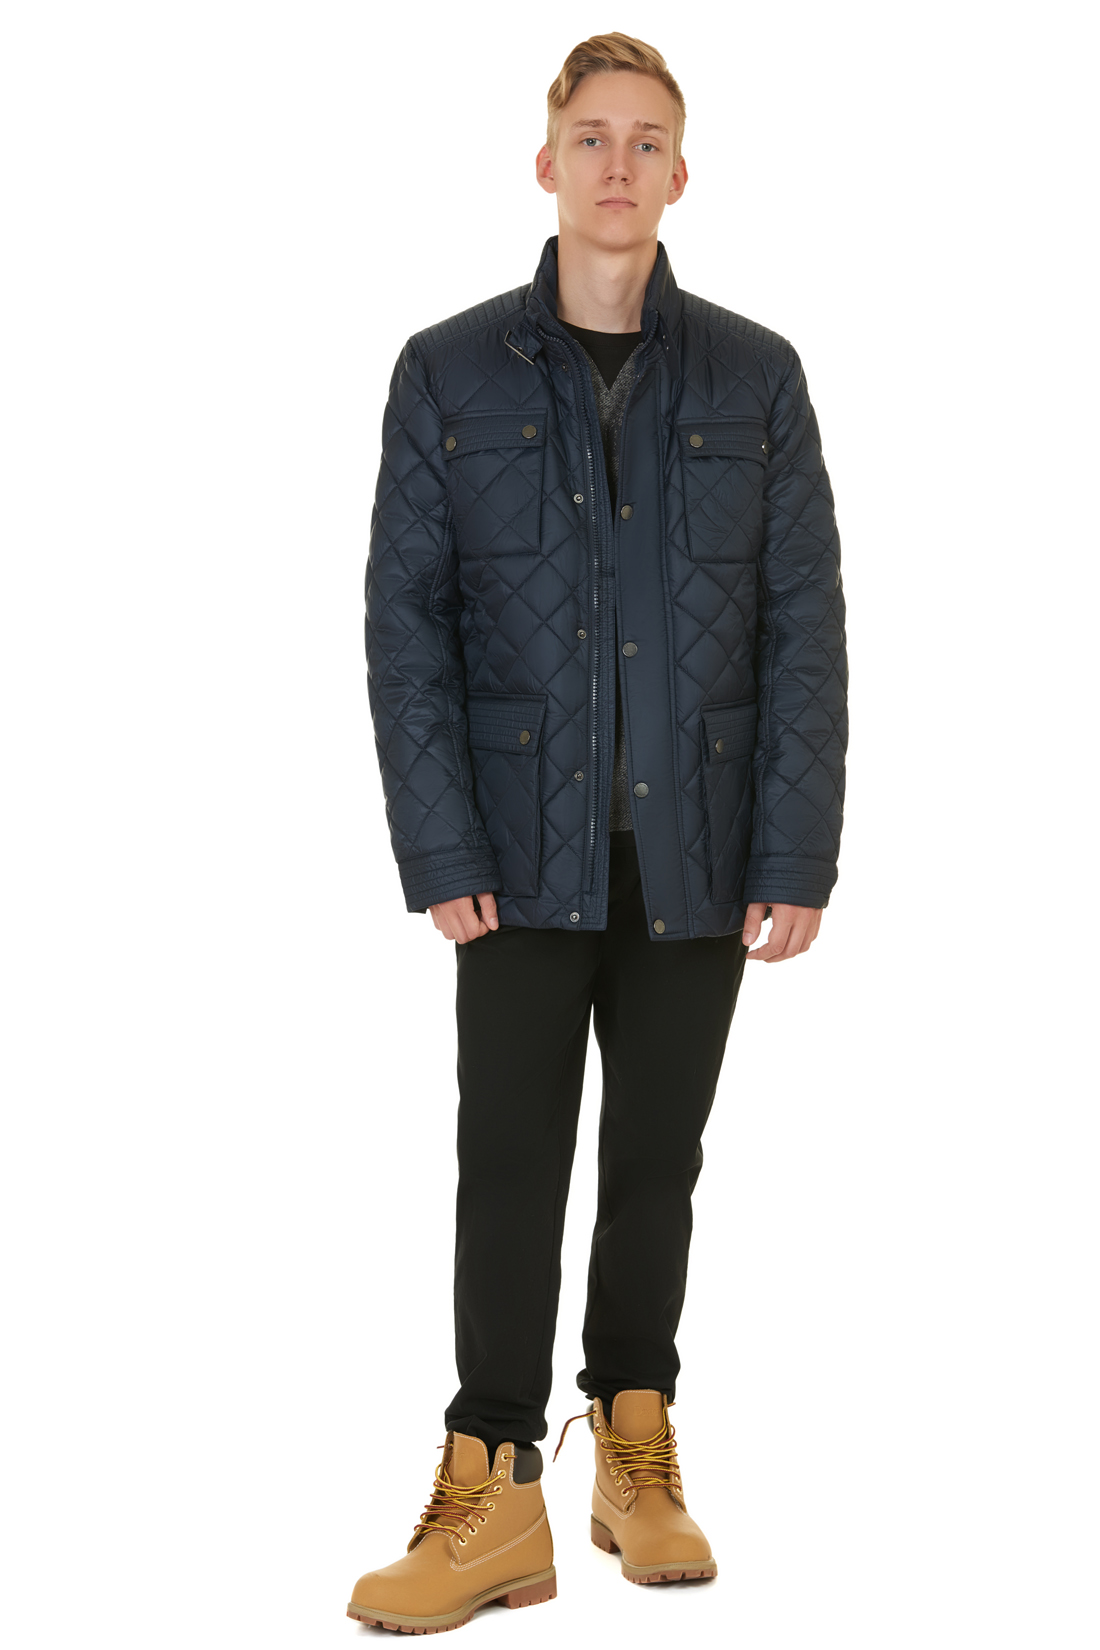 Стёганая куртка с металлической фурнитурой (арт. baon B537550), размер XXL, цвет синий Стёганая куртка с металлической фурнитурой (арт. baon B537550) - фото 5